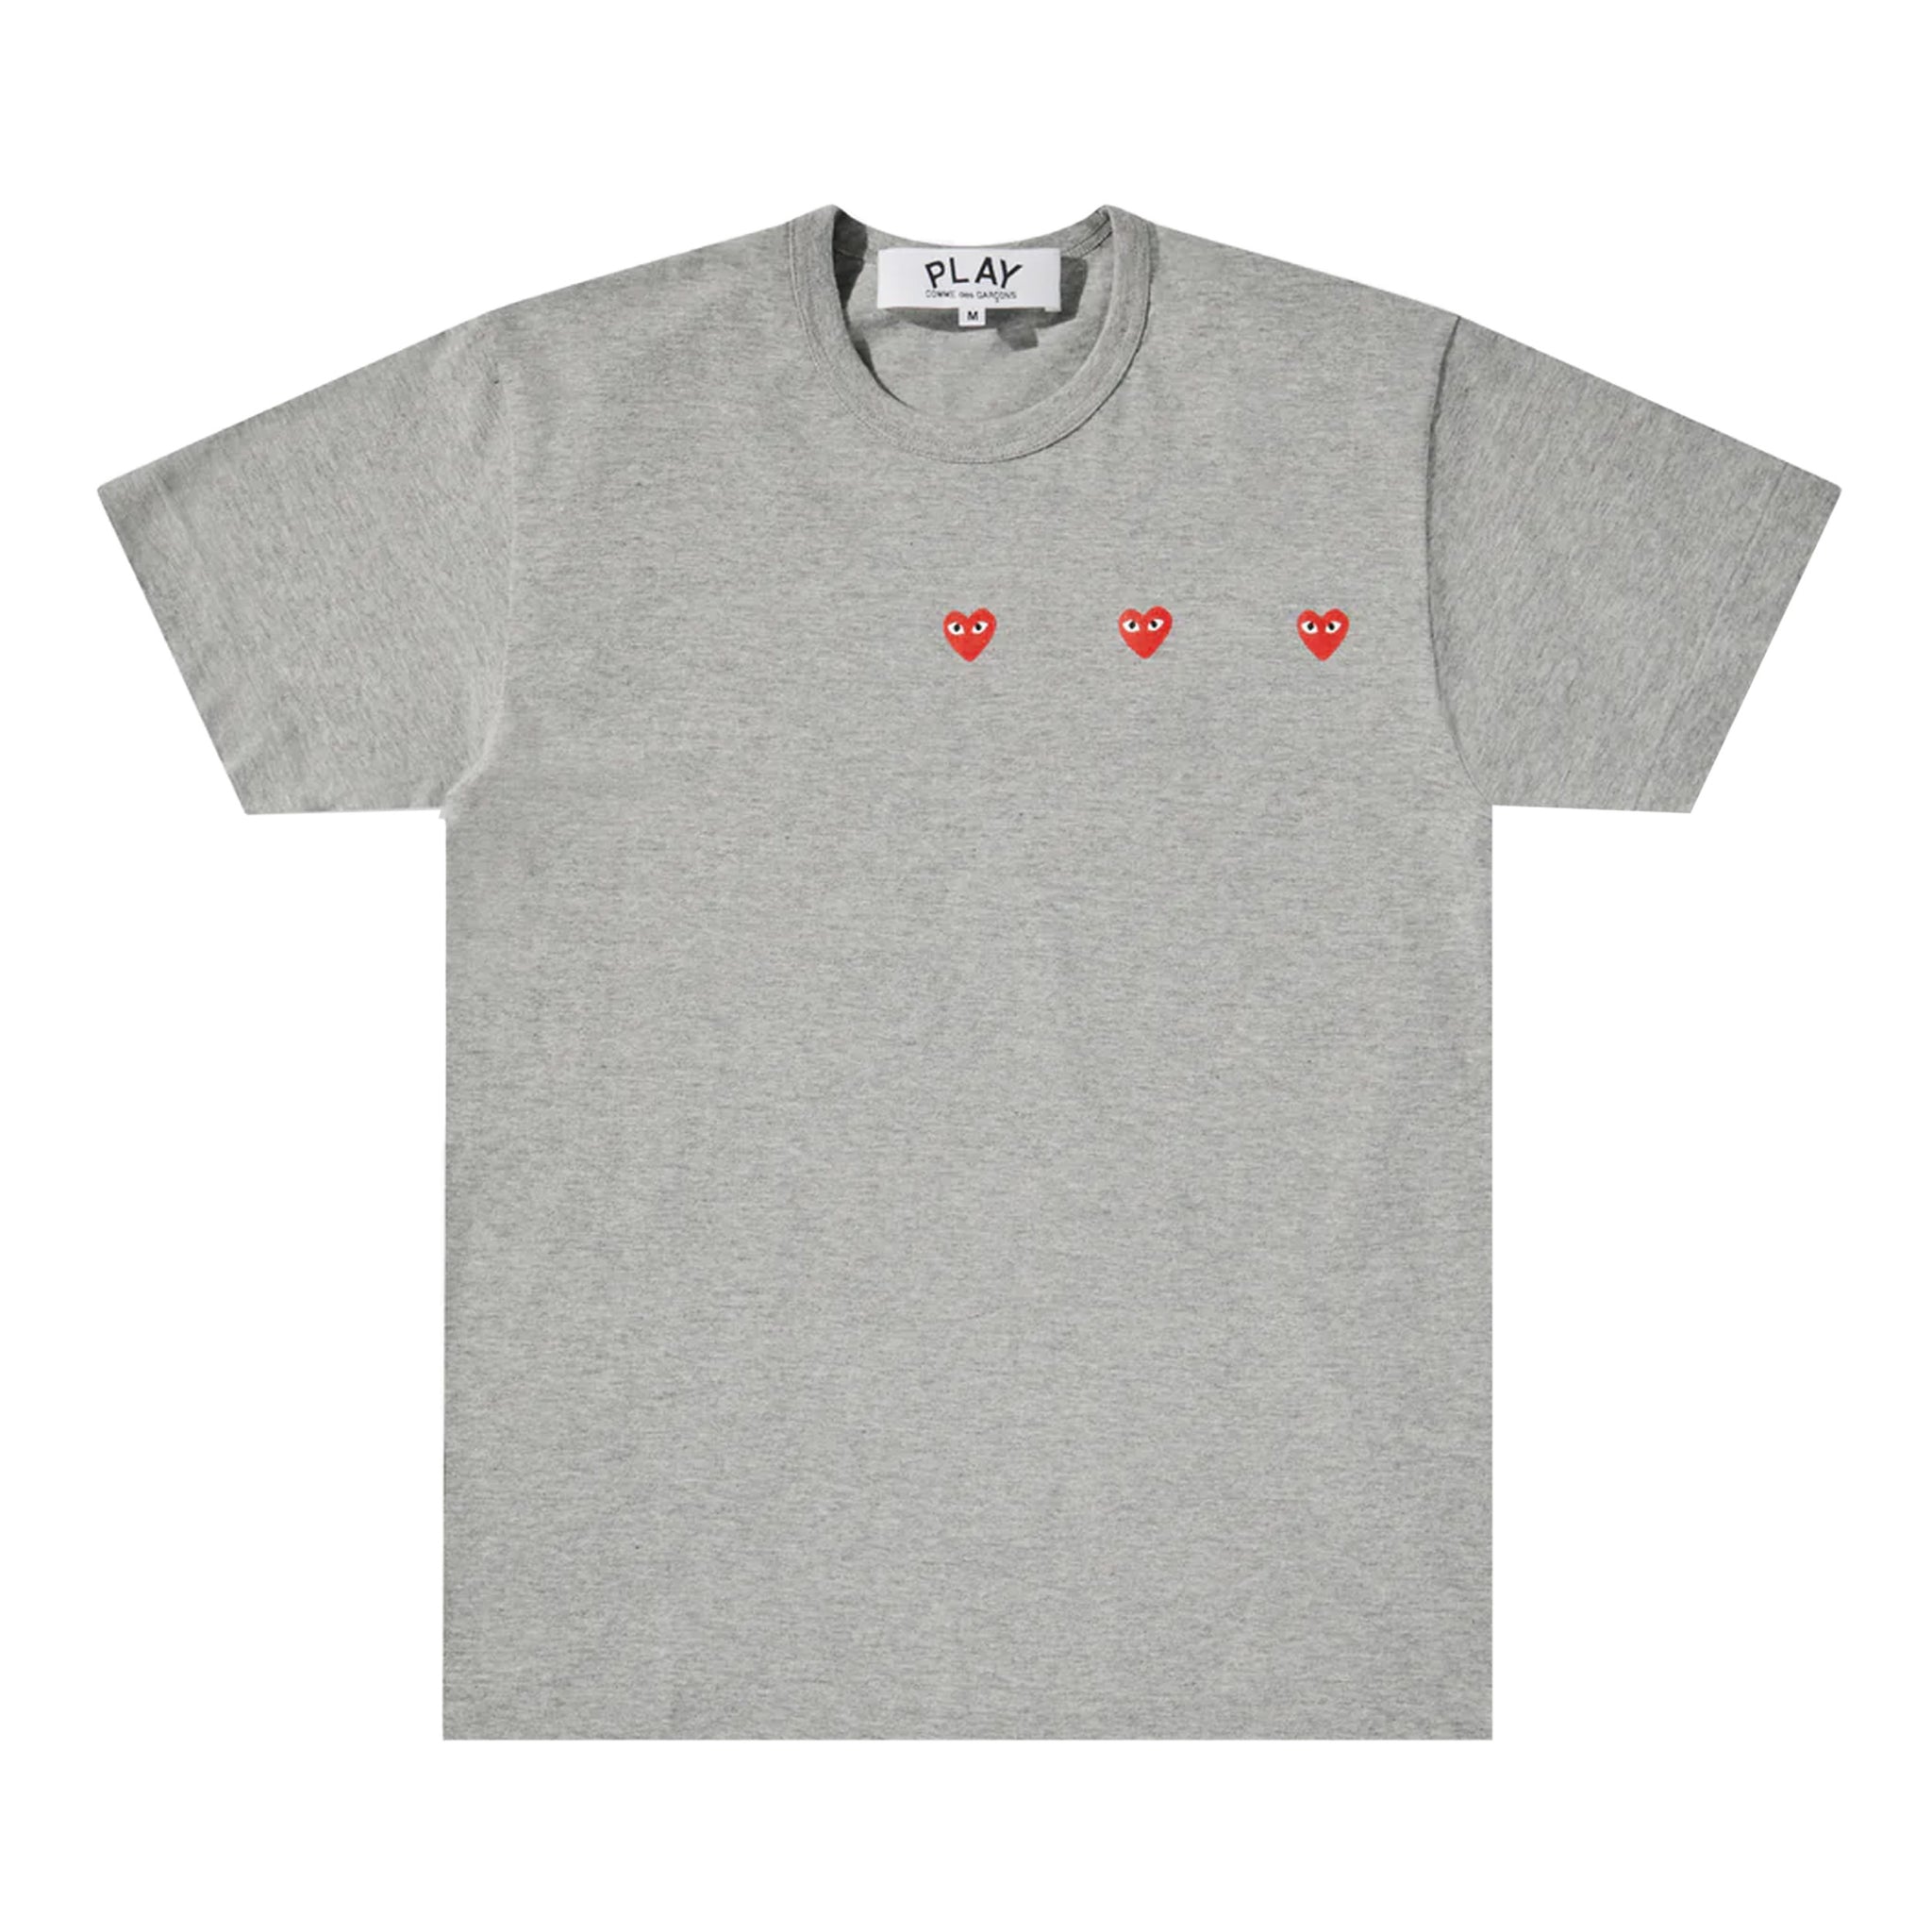 PLAY Horizontal Three Heart Logo T-Shirt (Grey)